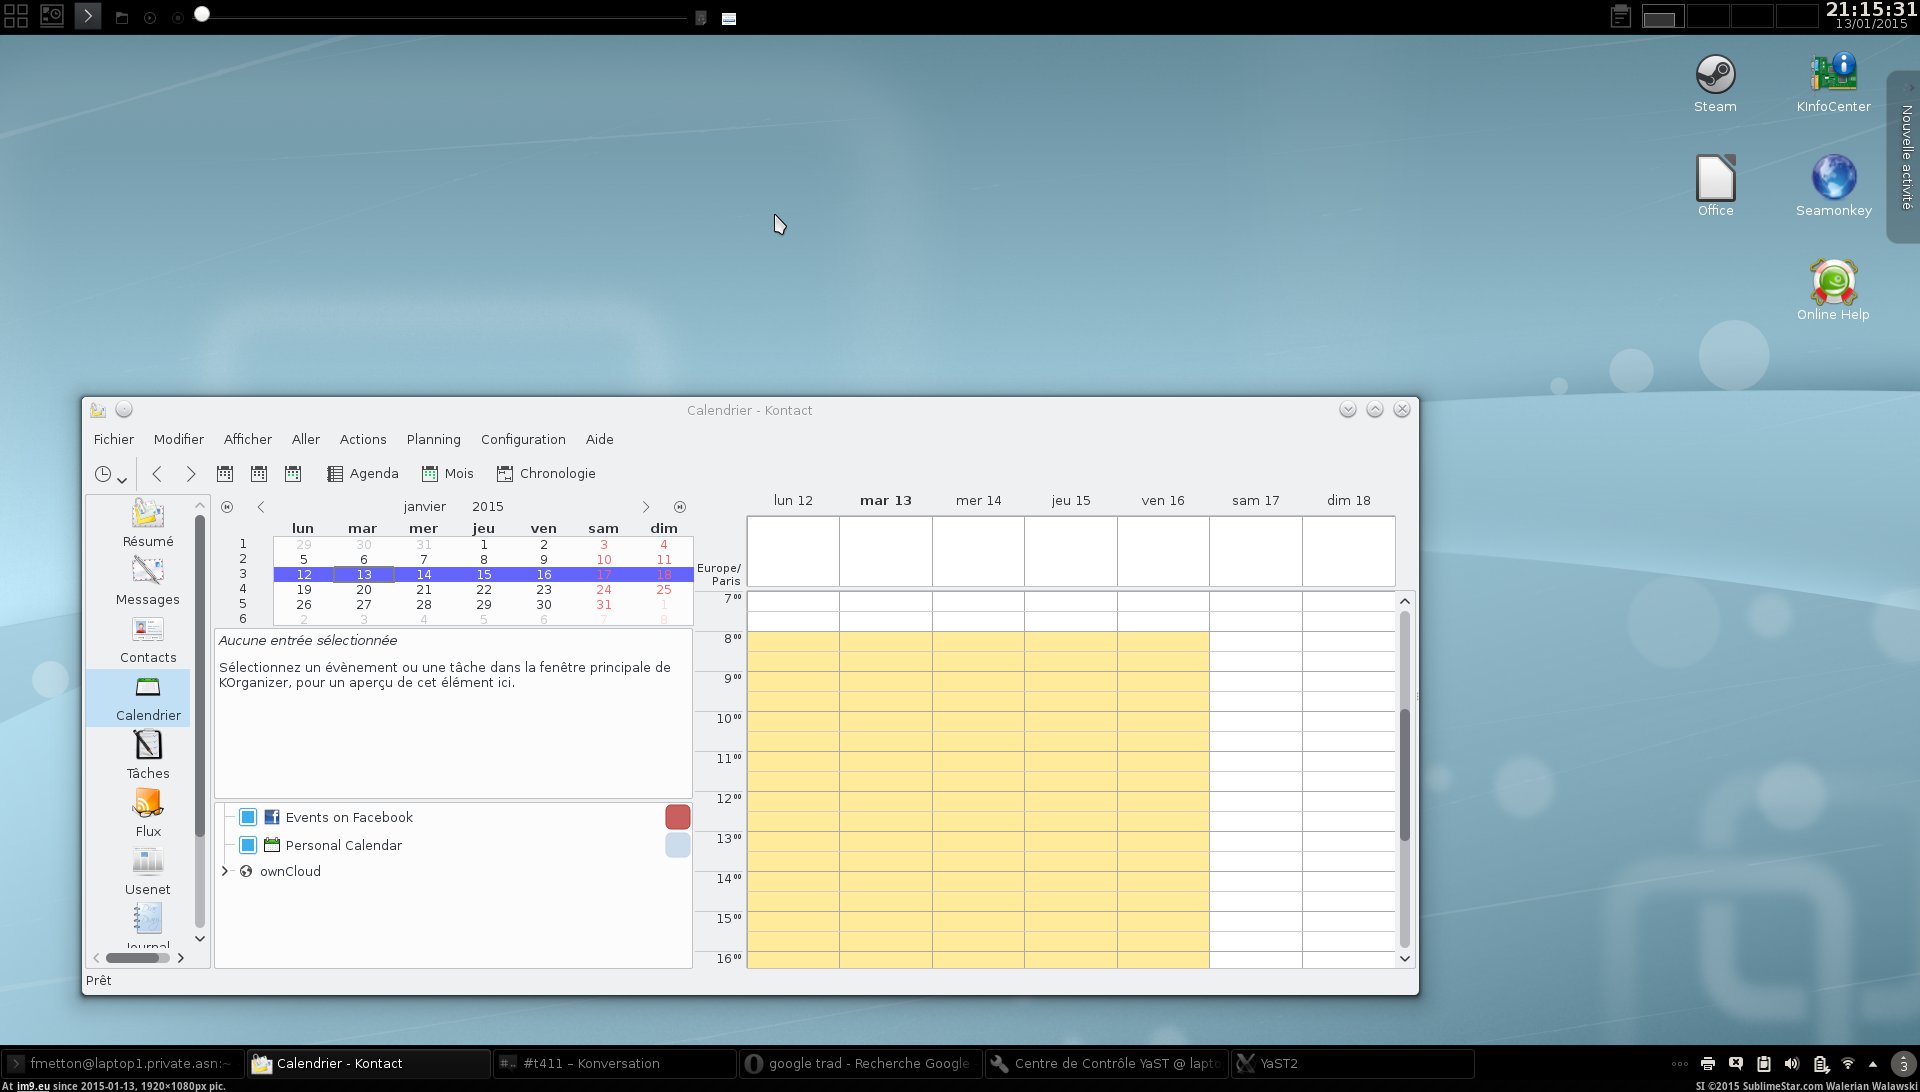 bR1593 (in KDE PasteBin)